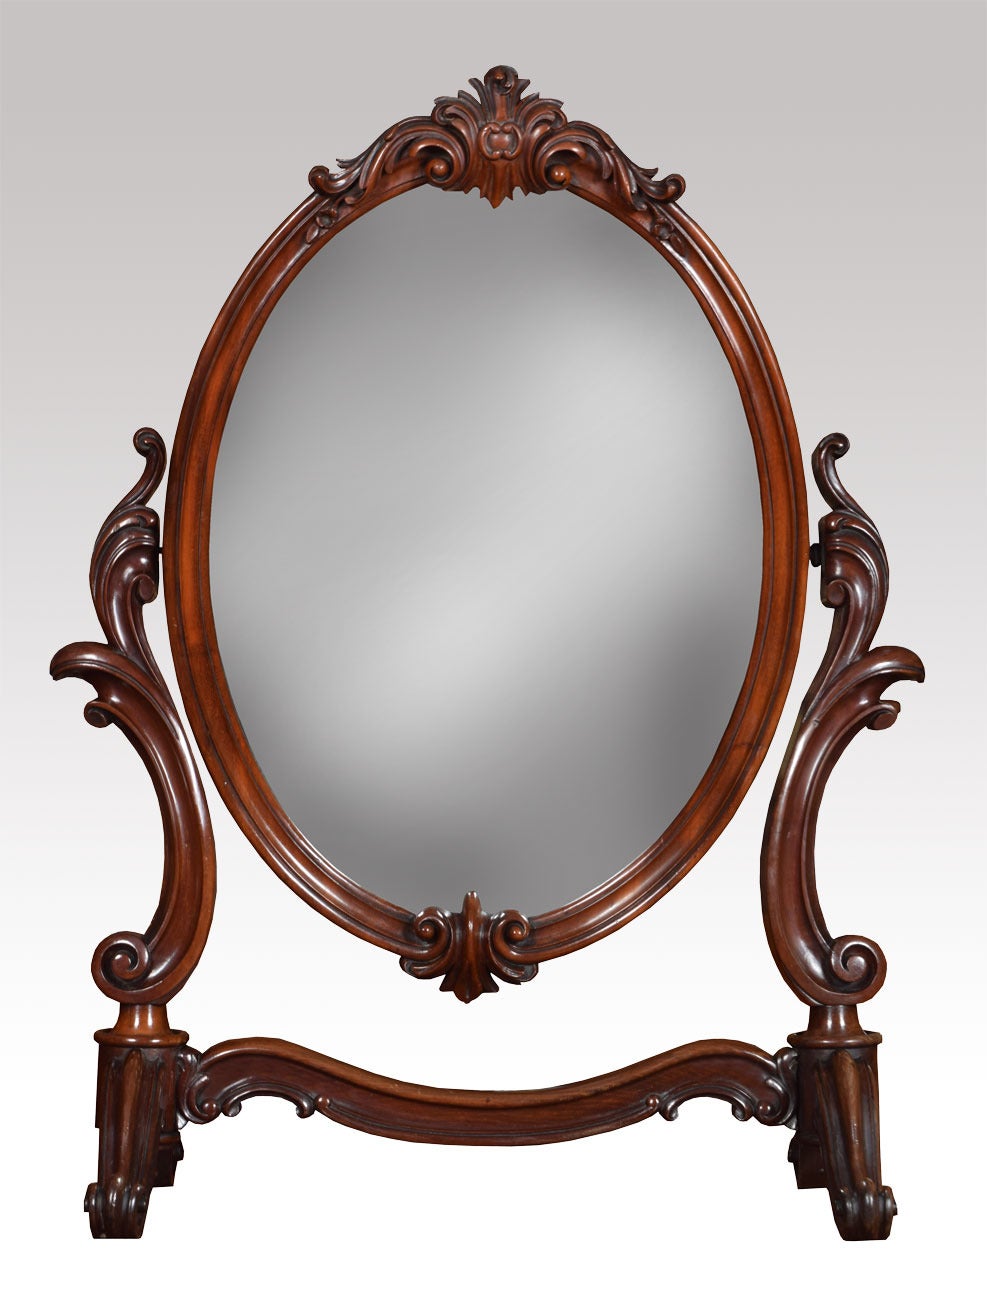 miroirs de coiffeuse en acajou du 19e siècle. Le fronton floral sculpté sur le miroir ovale est entouré d'un cadre en acajou, le tout reposant sur des supports à volutes florales

Dimensions

Hauteur 34.5 pouces

Largeur 26.5